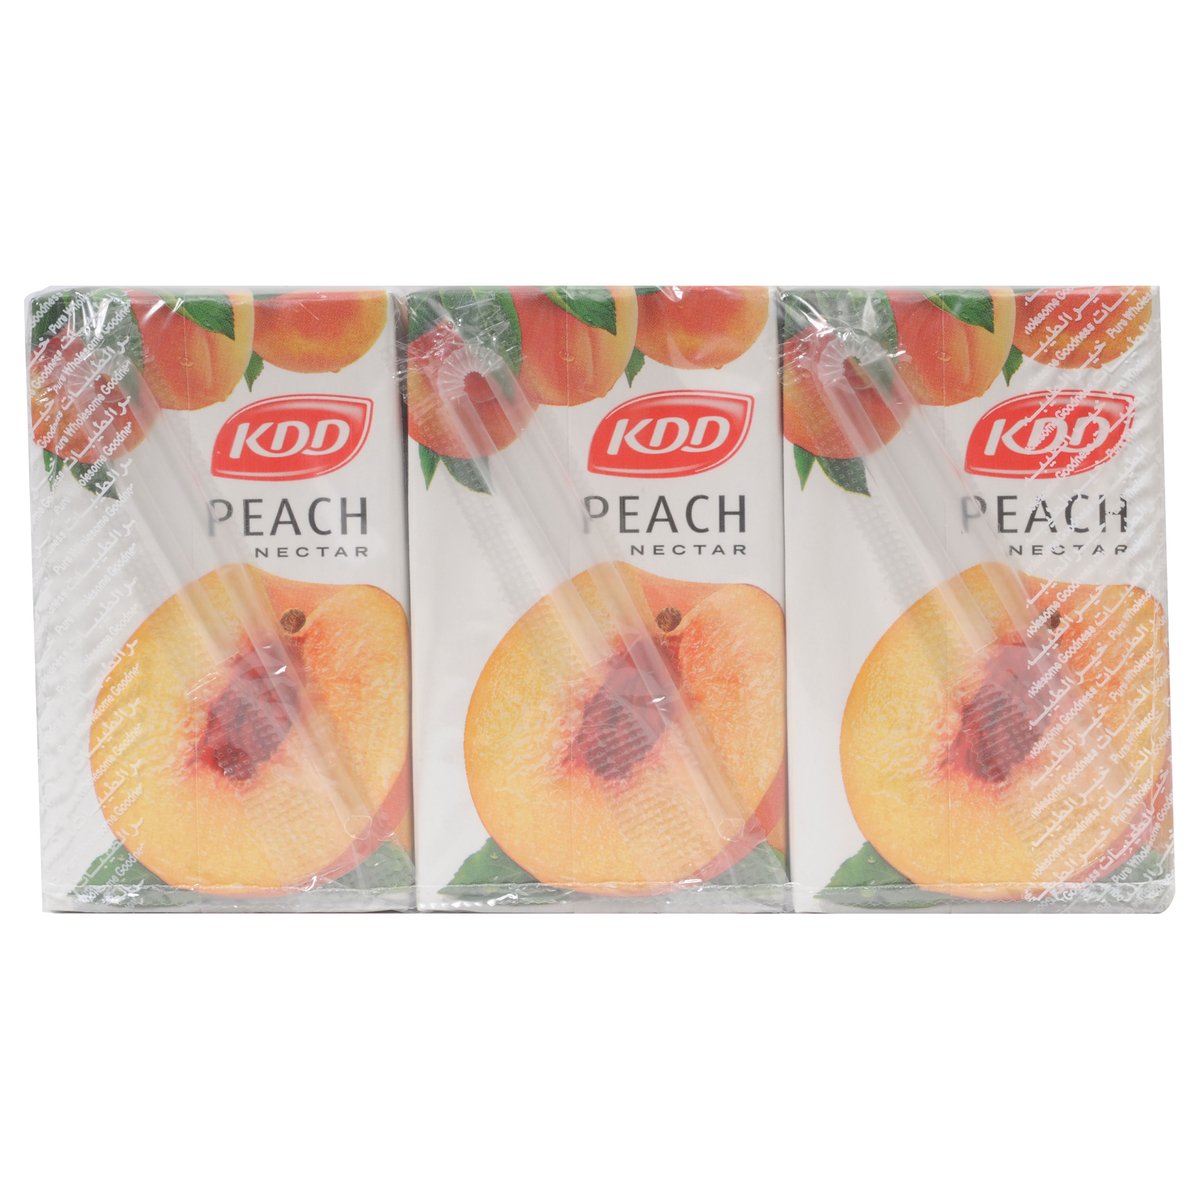 KDD Peach Nectar 250ml x 6 Pieces